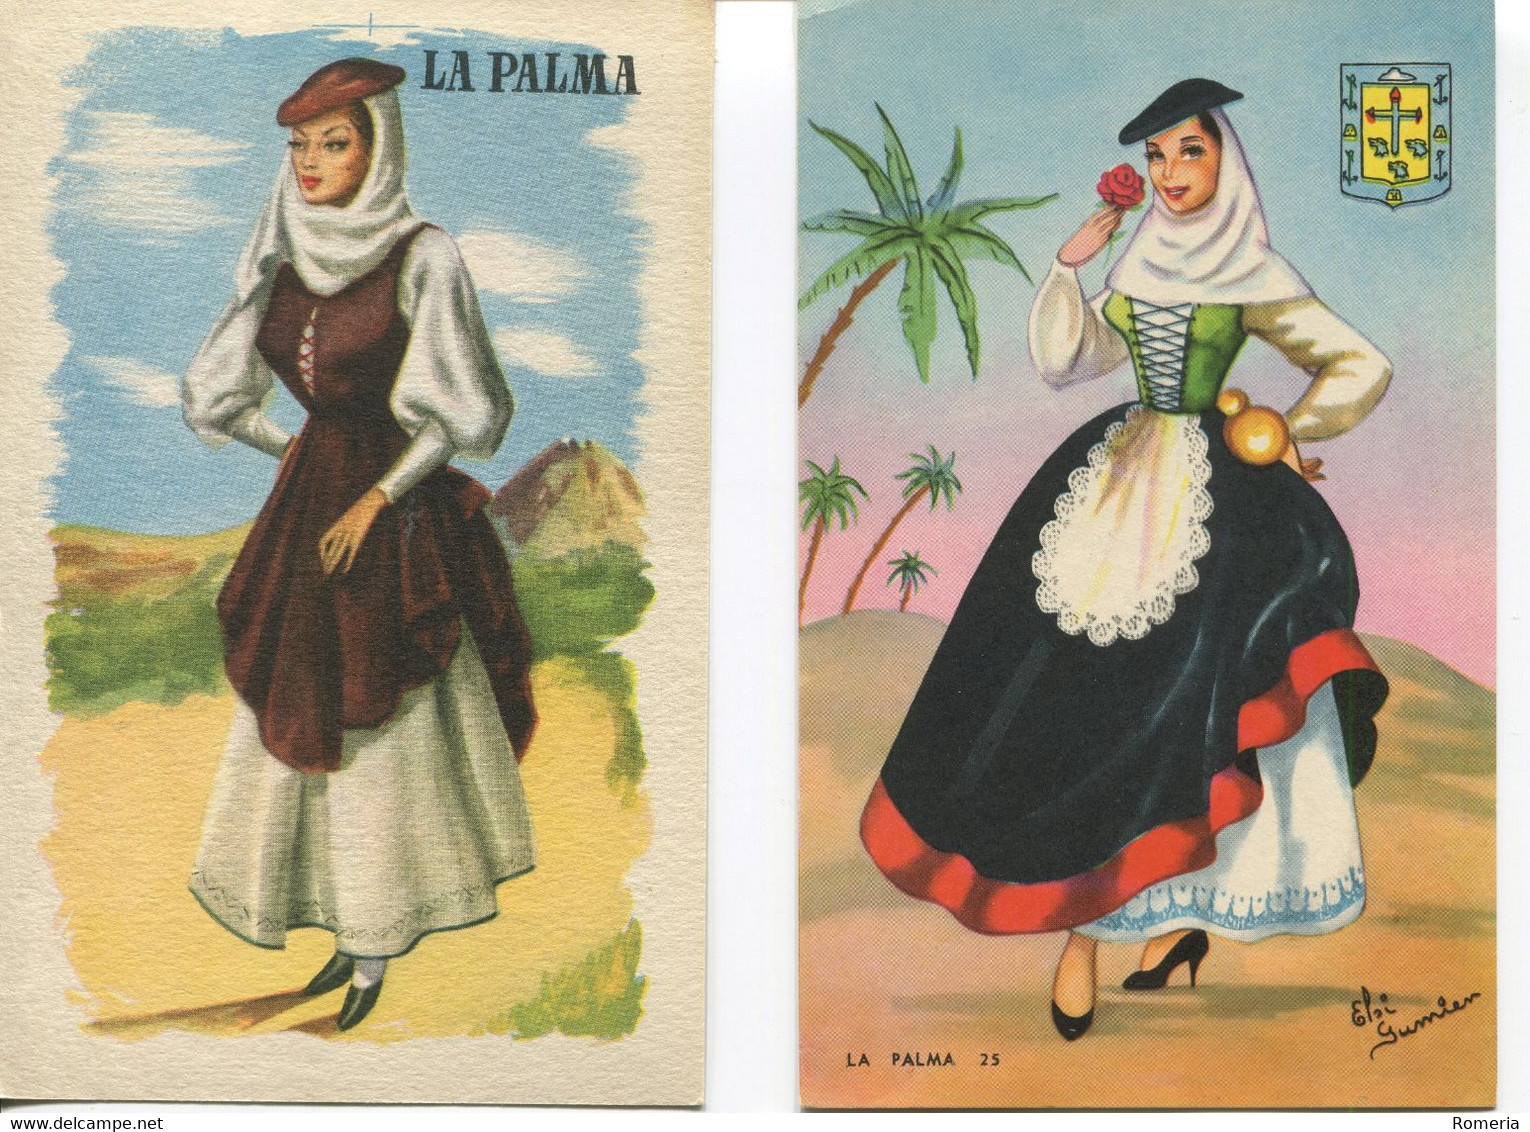 Canaries - La Palma - Lot 16 cartes neuves et/ou timbrées